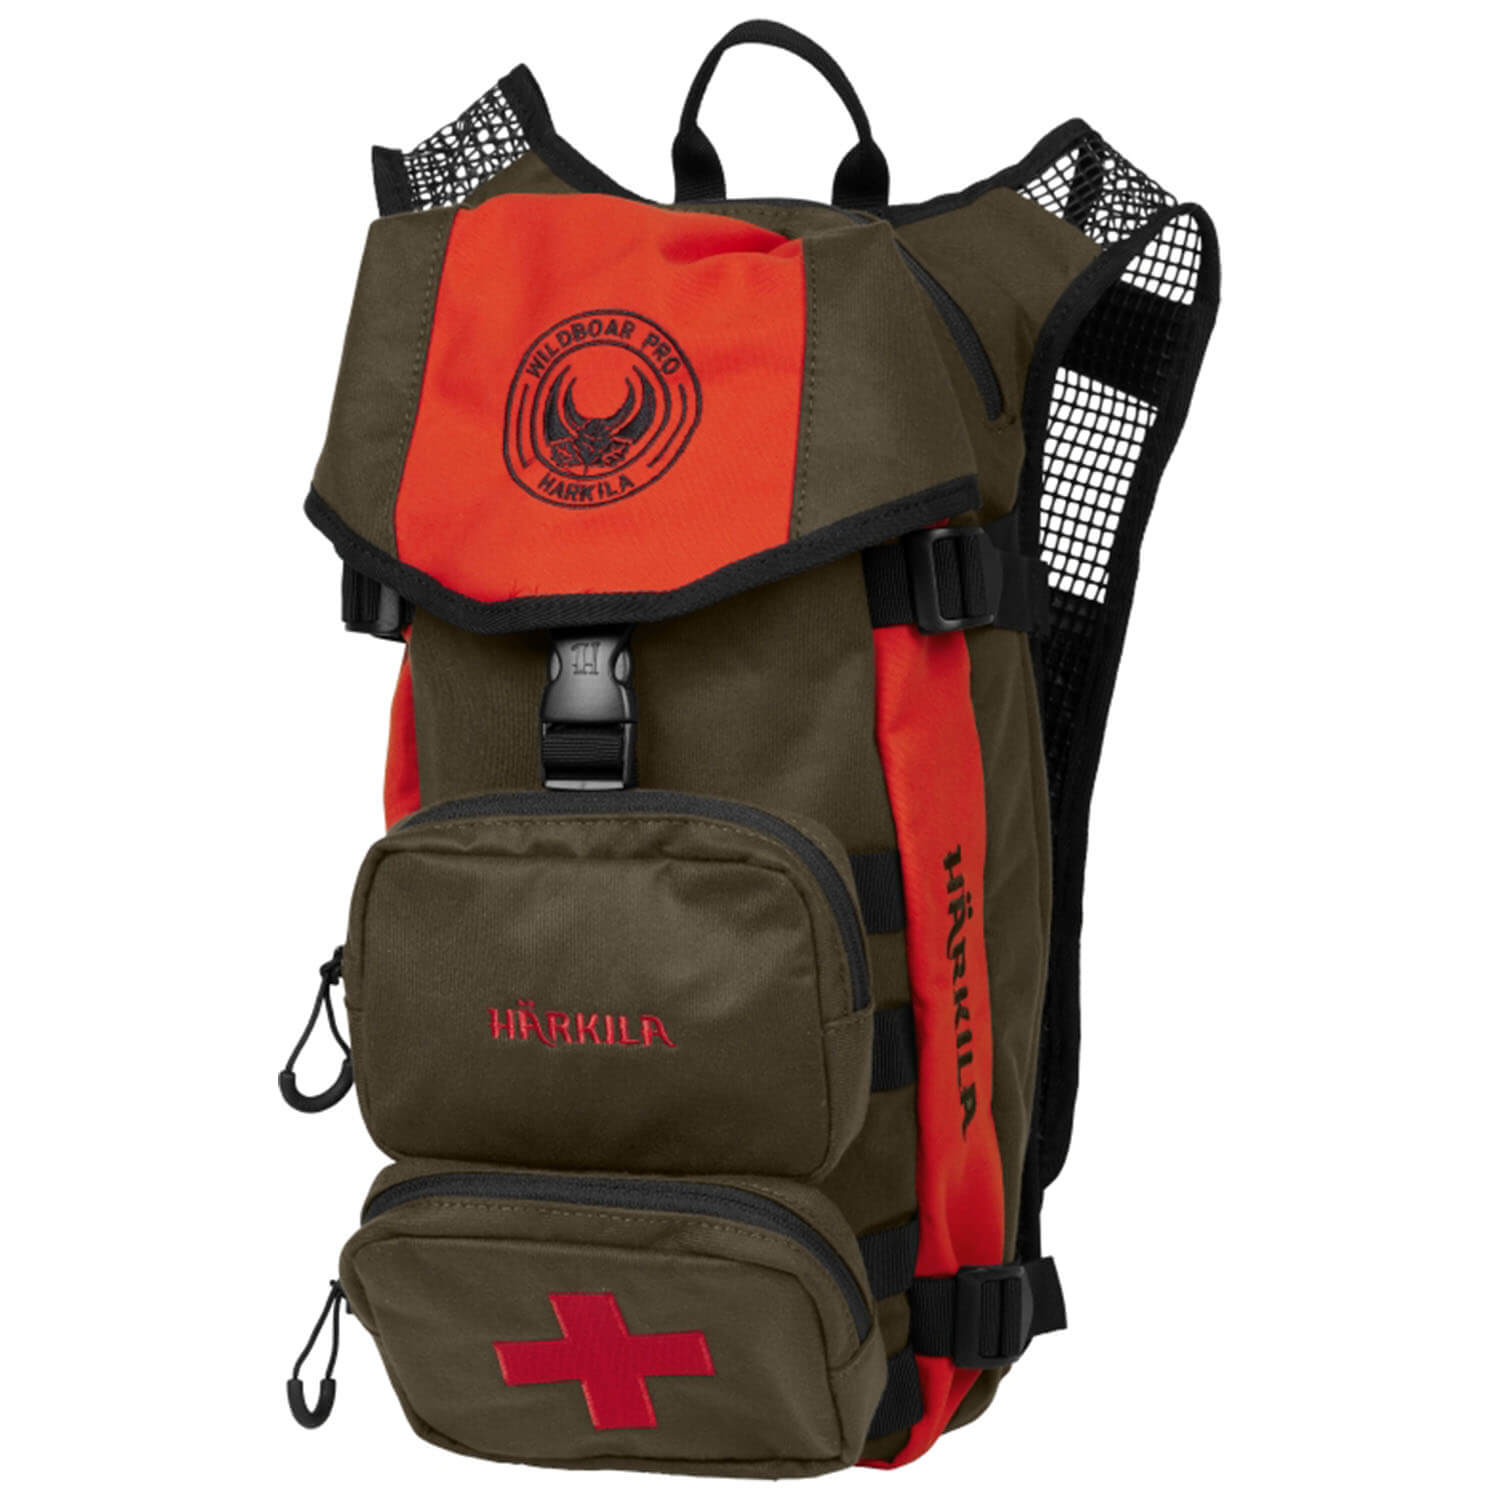 Härkila Backpack Wildboar Pro - Hunting Equipment